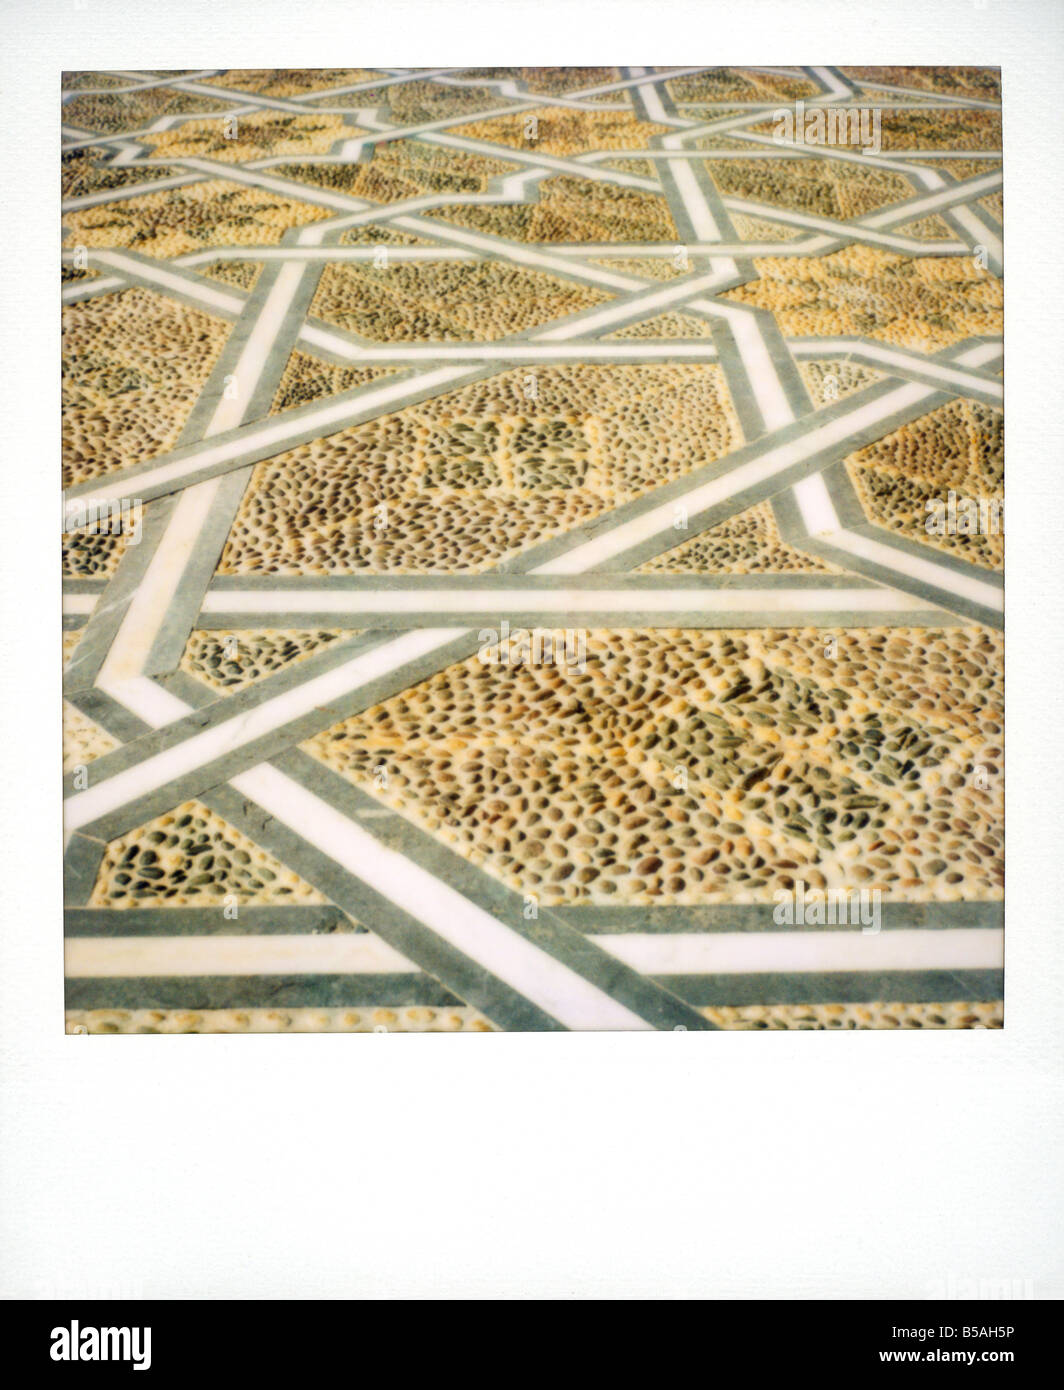 Polaroid Image der geometrischen Mustern in ebnet am Mausoleum von Mohammed V Rabat Marokko Nordafrika Afrika Stockfoto